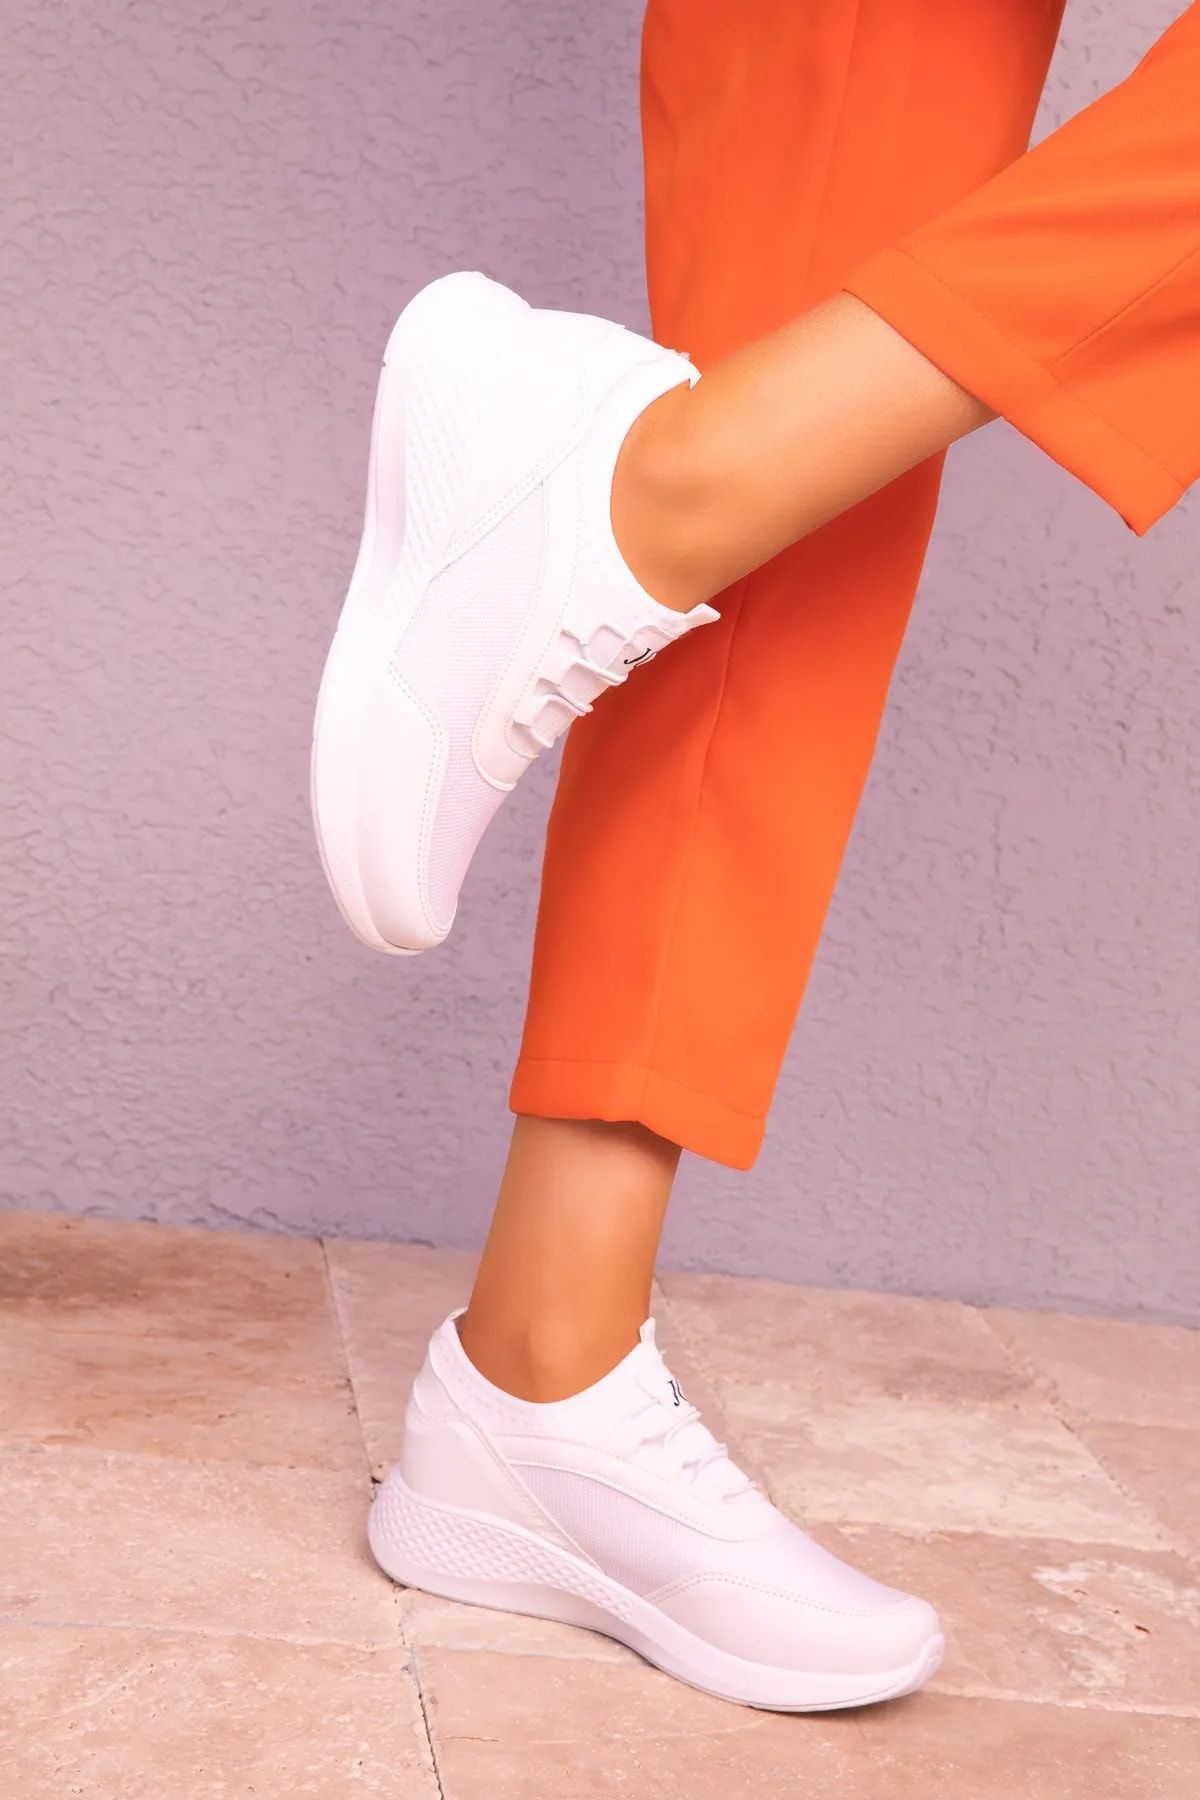 TOBAİ Tam Ortapedik Kadın Beyaz Sneaker Rahat Günlük Spor Ayakkabı